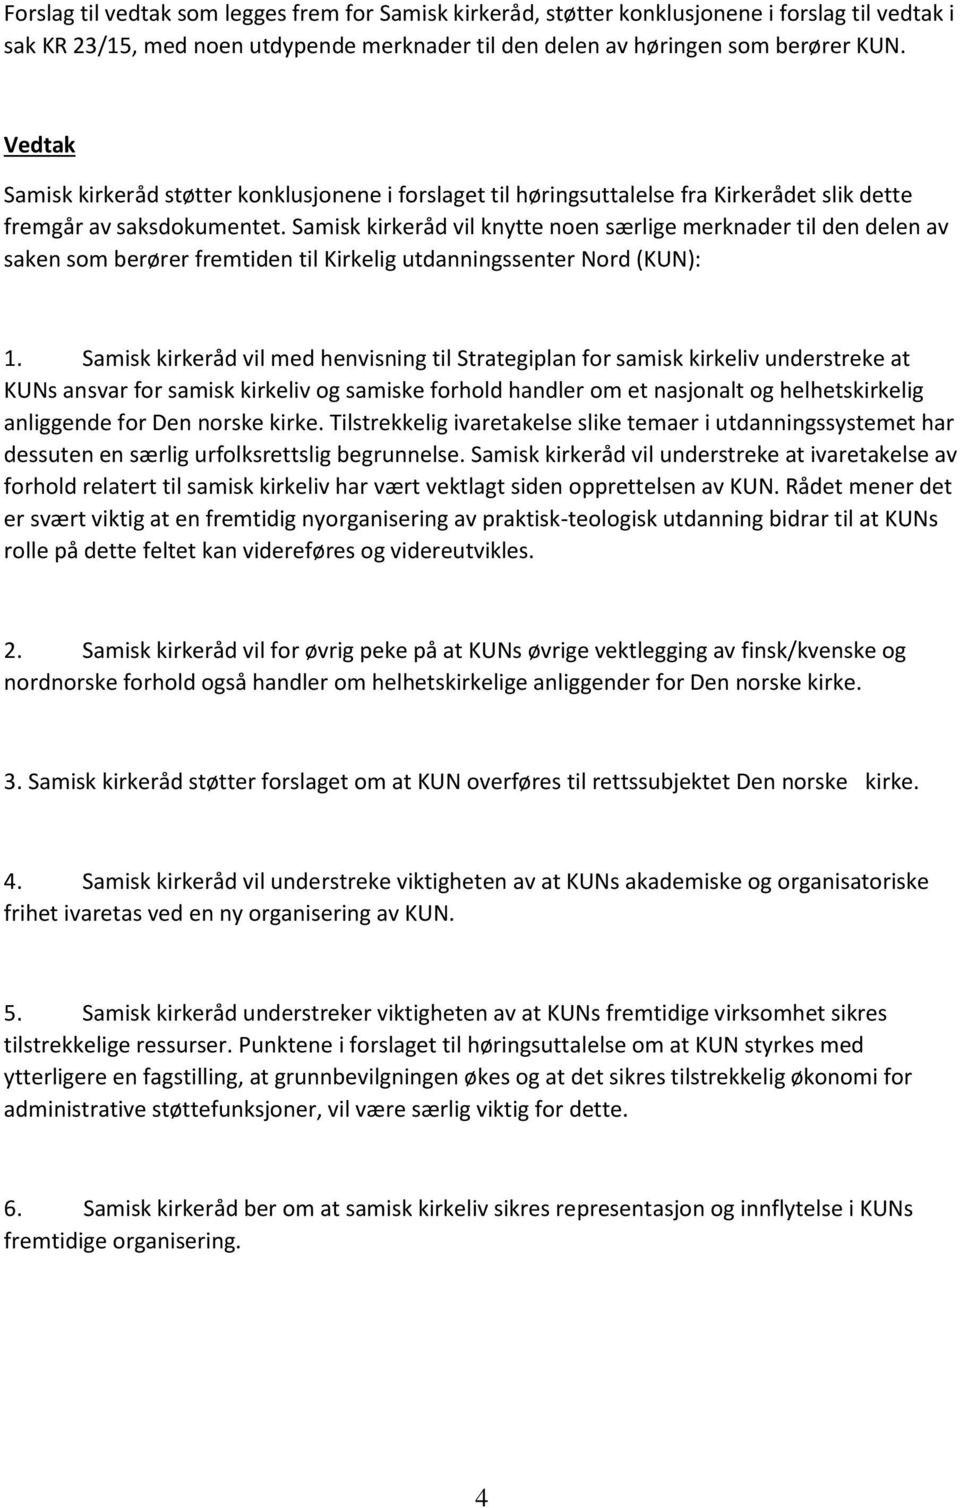 Samisk kirkeråd vil knytte noen særlige merknader til den delen av saken som berører fremtiden til Kirkelig utdanningssenter Nord (KUN): 1.